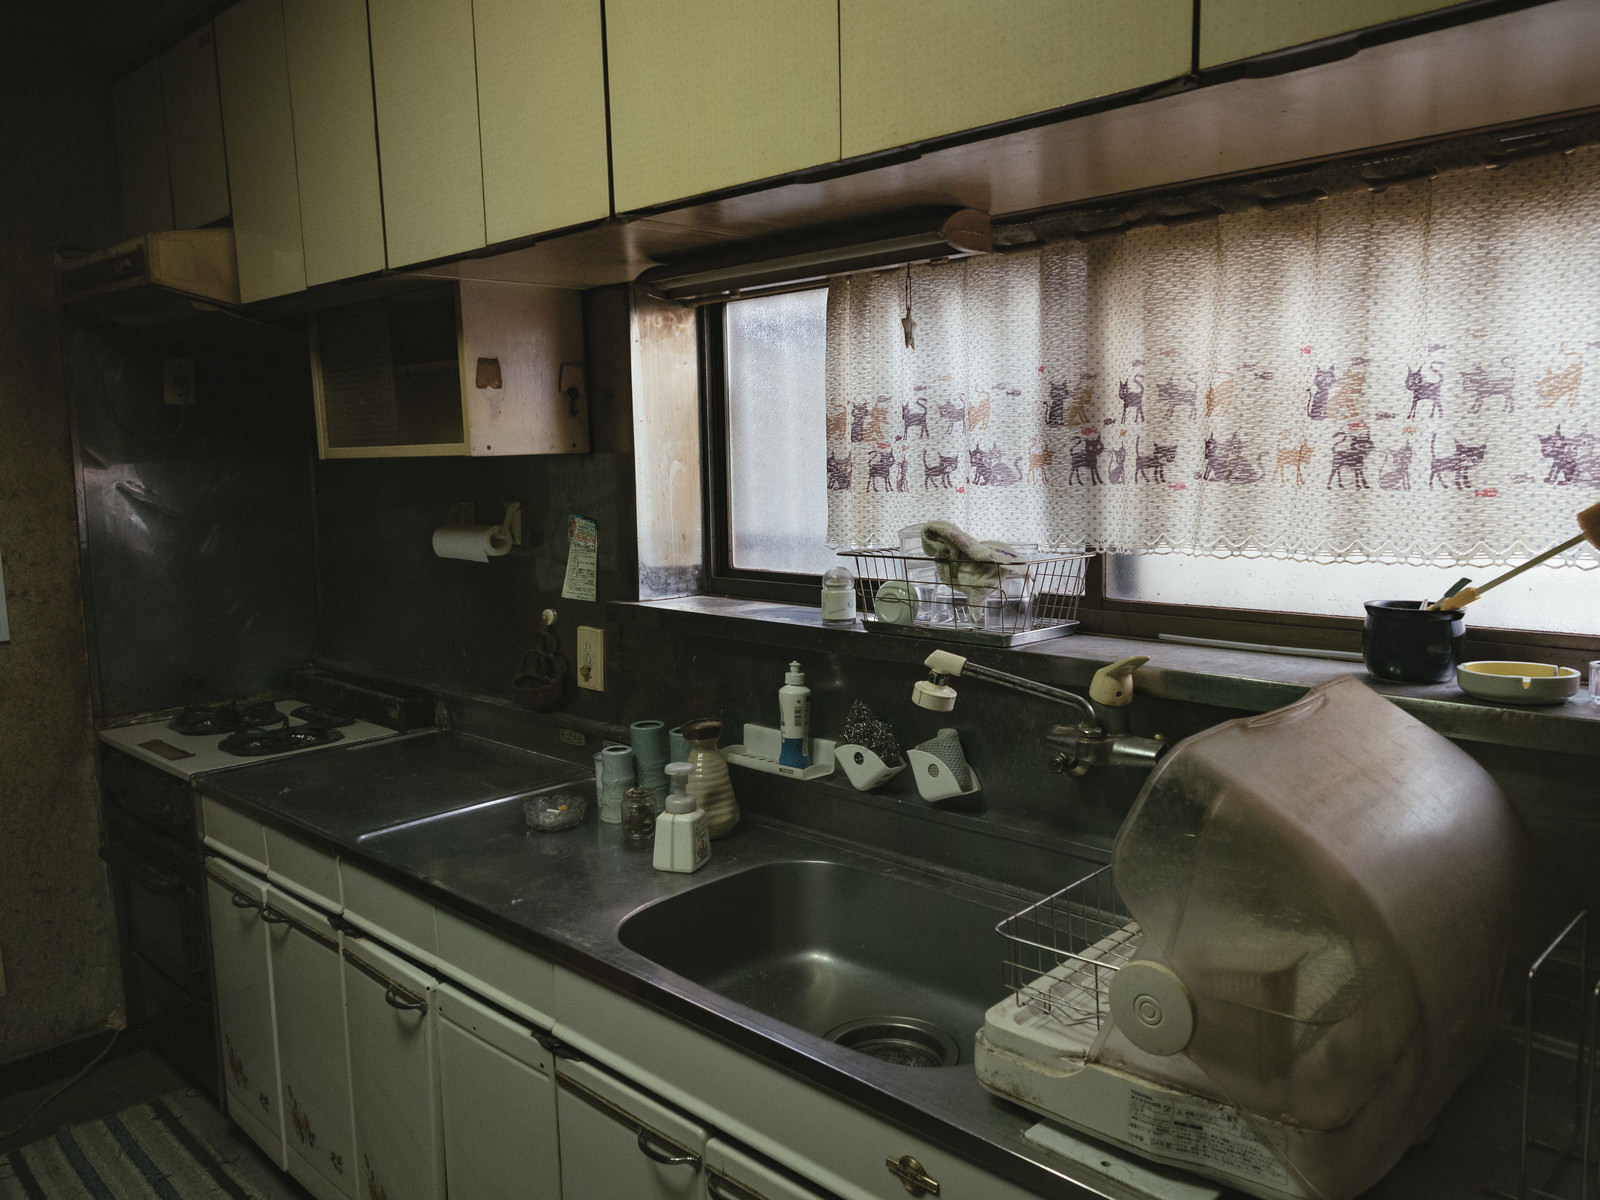 「昭和感漂うキッチンの様子 | フリー素材のぱくたそ」の写真